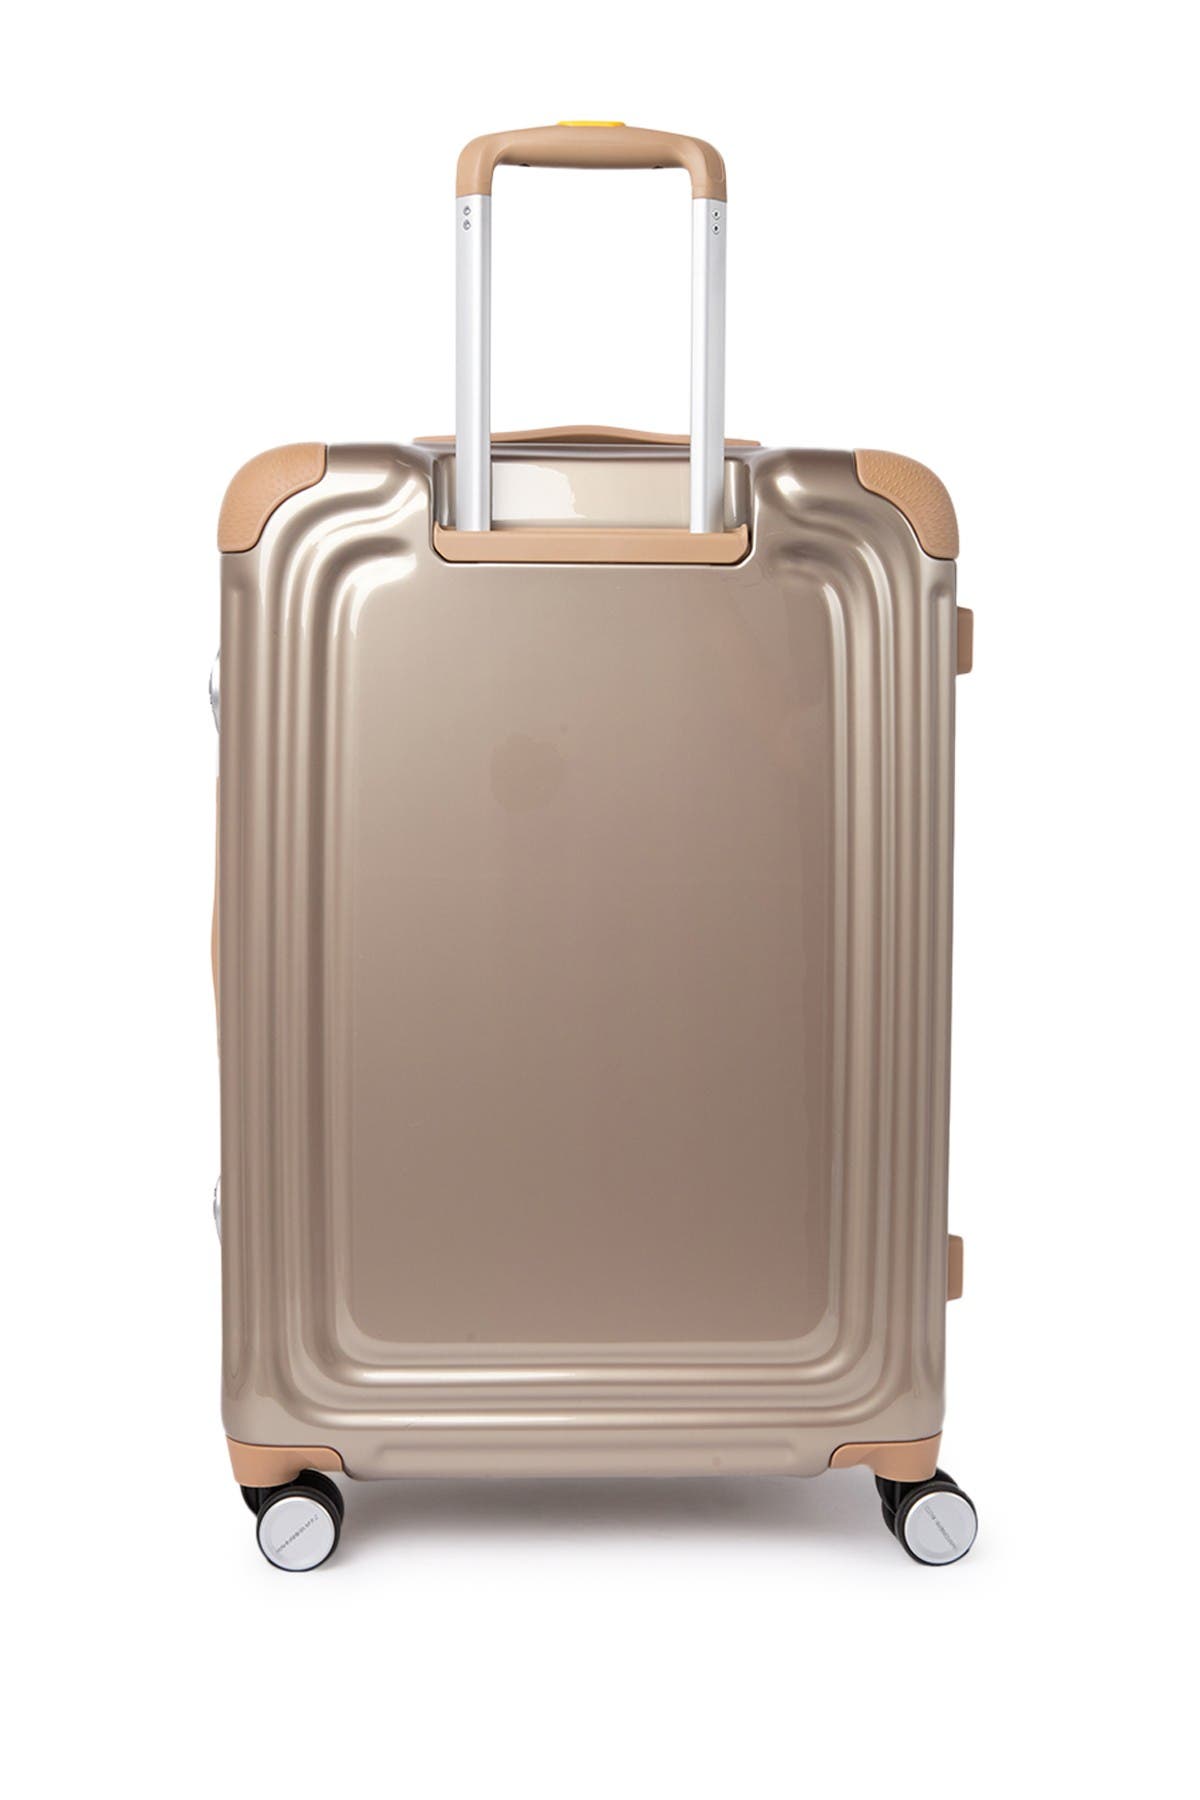 Mandarina Duck C-frame Medium Trolley Hardshell Luggage In Irish Cream